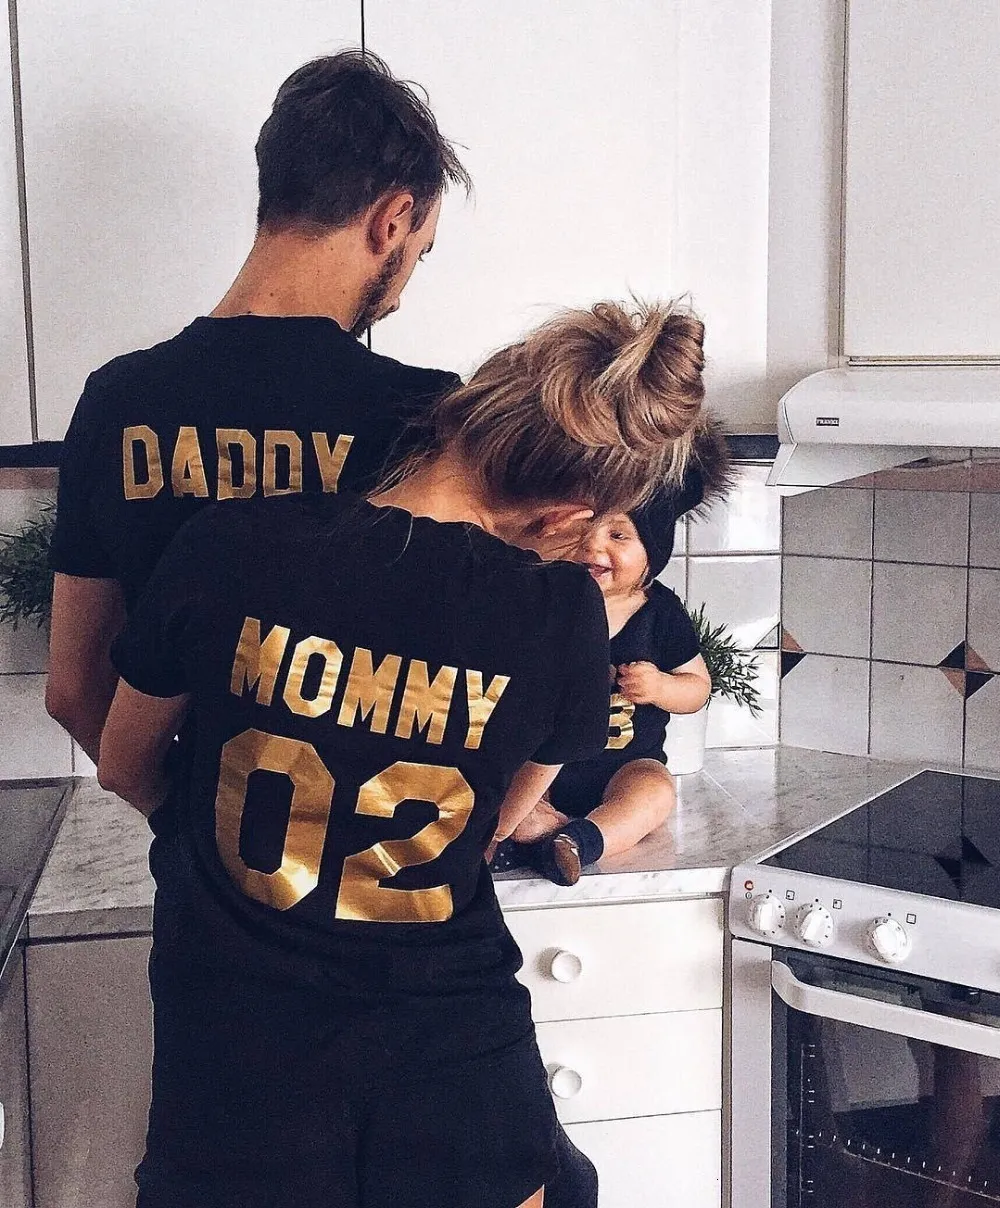 Dopasowanie rodzinnych strojów Rodzinne ubrania rodzinne wygląd Bawełny koszulka tatusia mama dzieciak dziecko zabawne litera numer druku